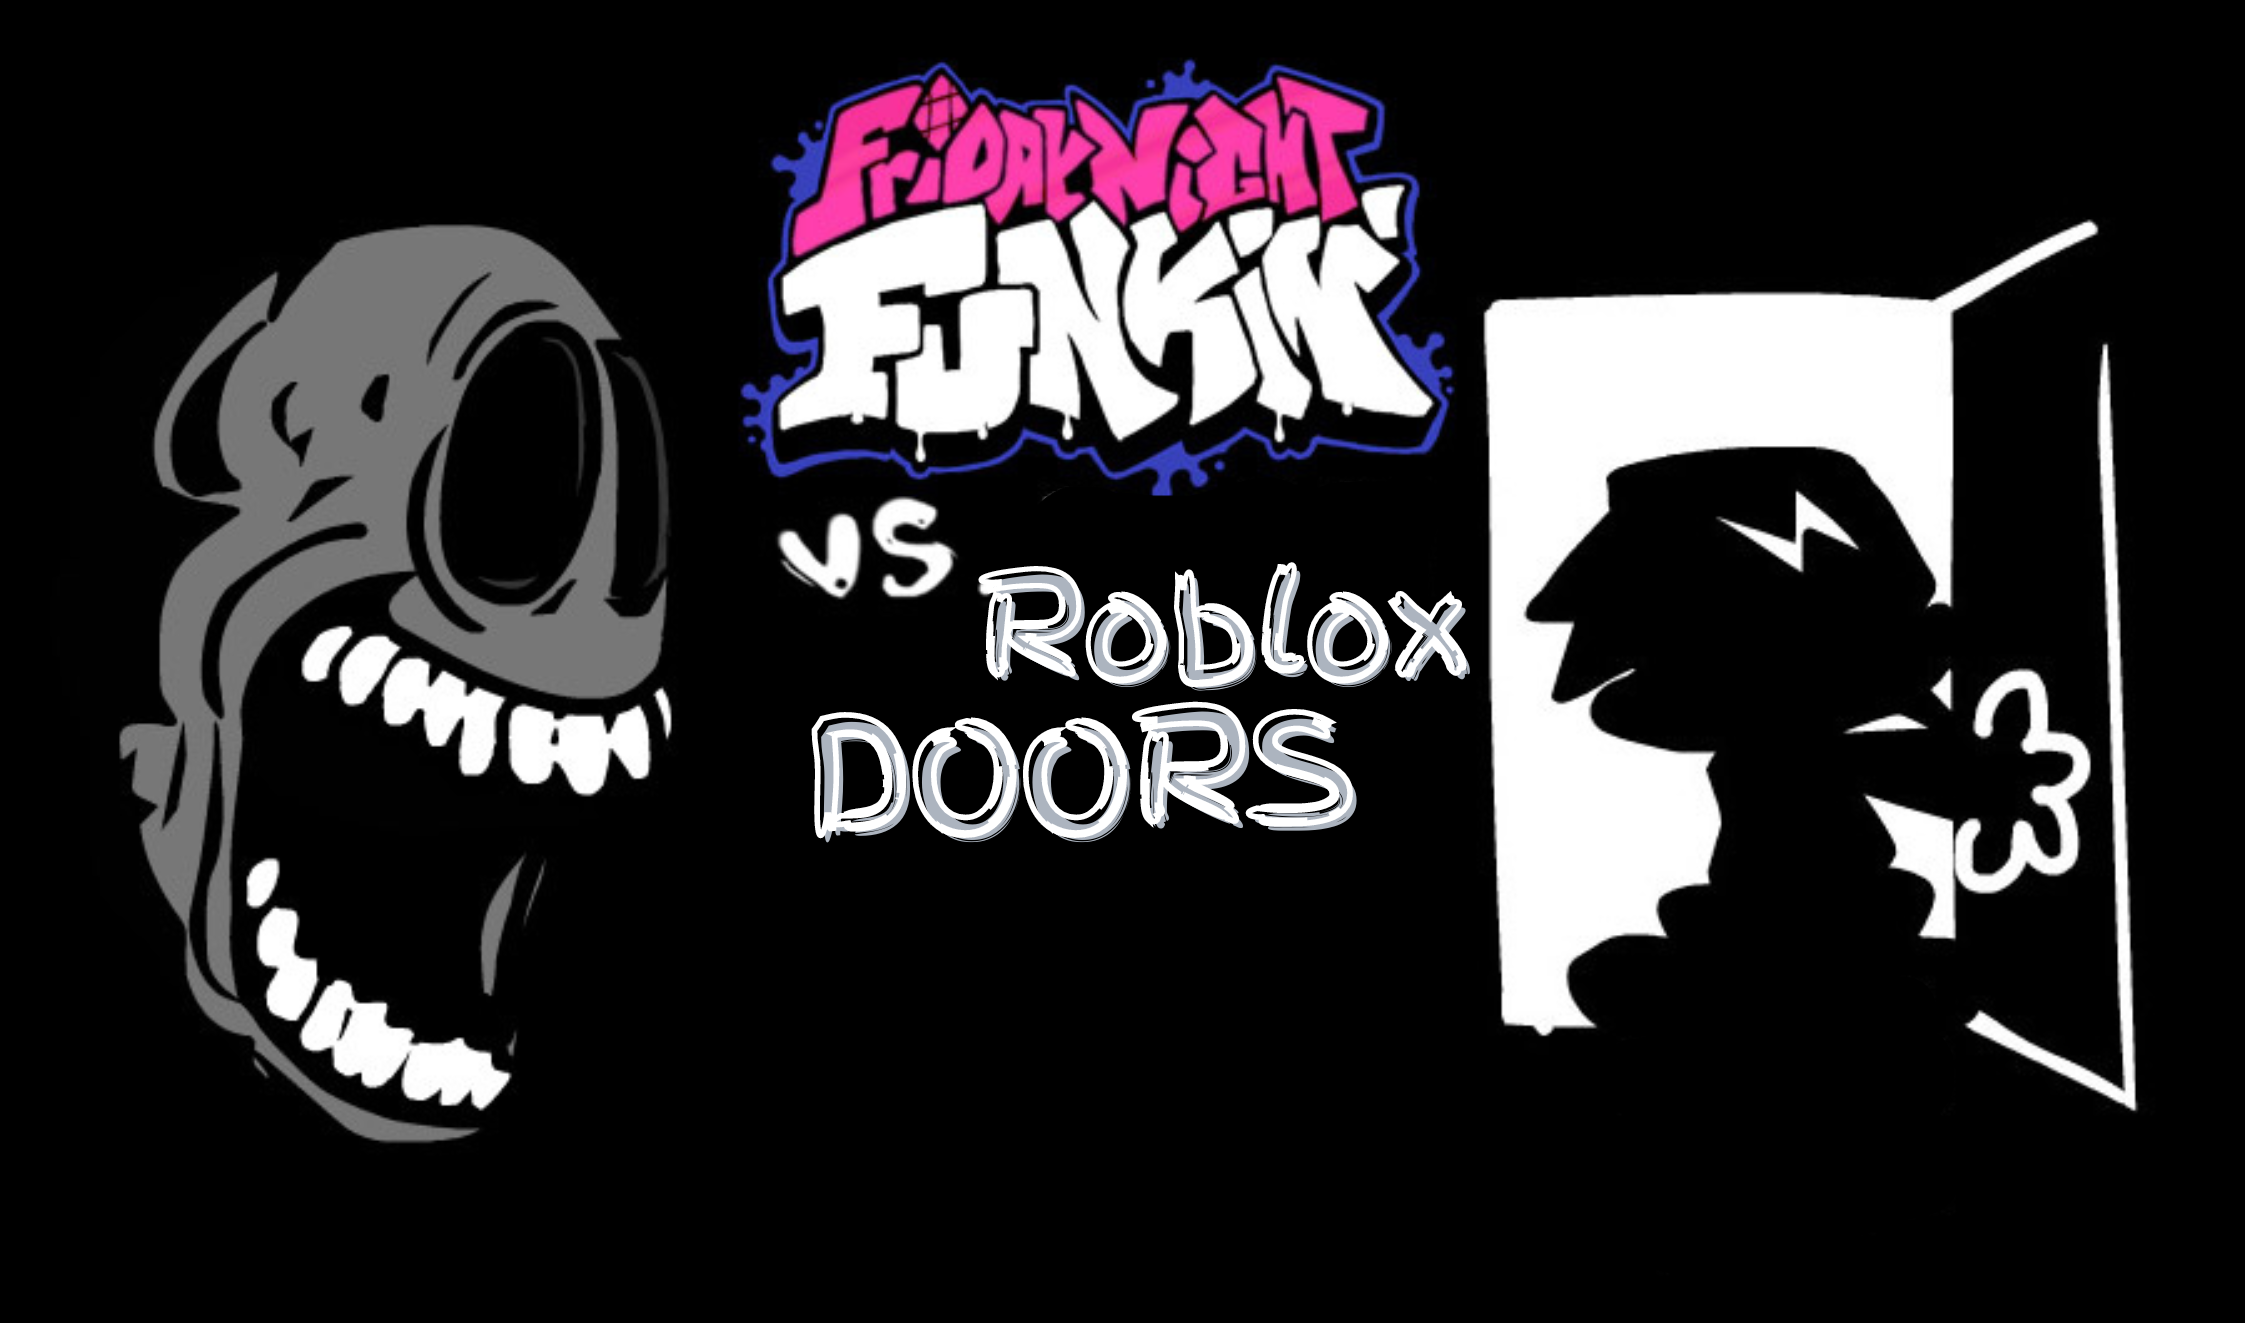 Doors roblox halt  Room doors, Door games, Doors